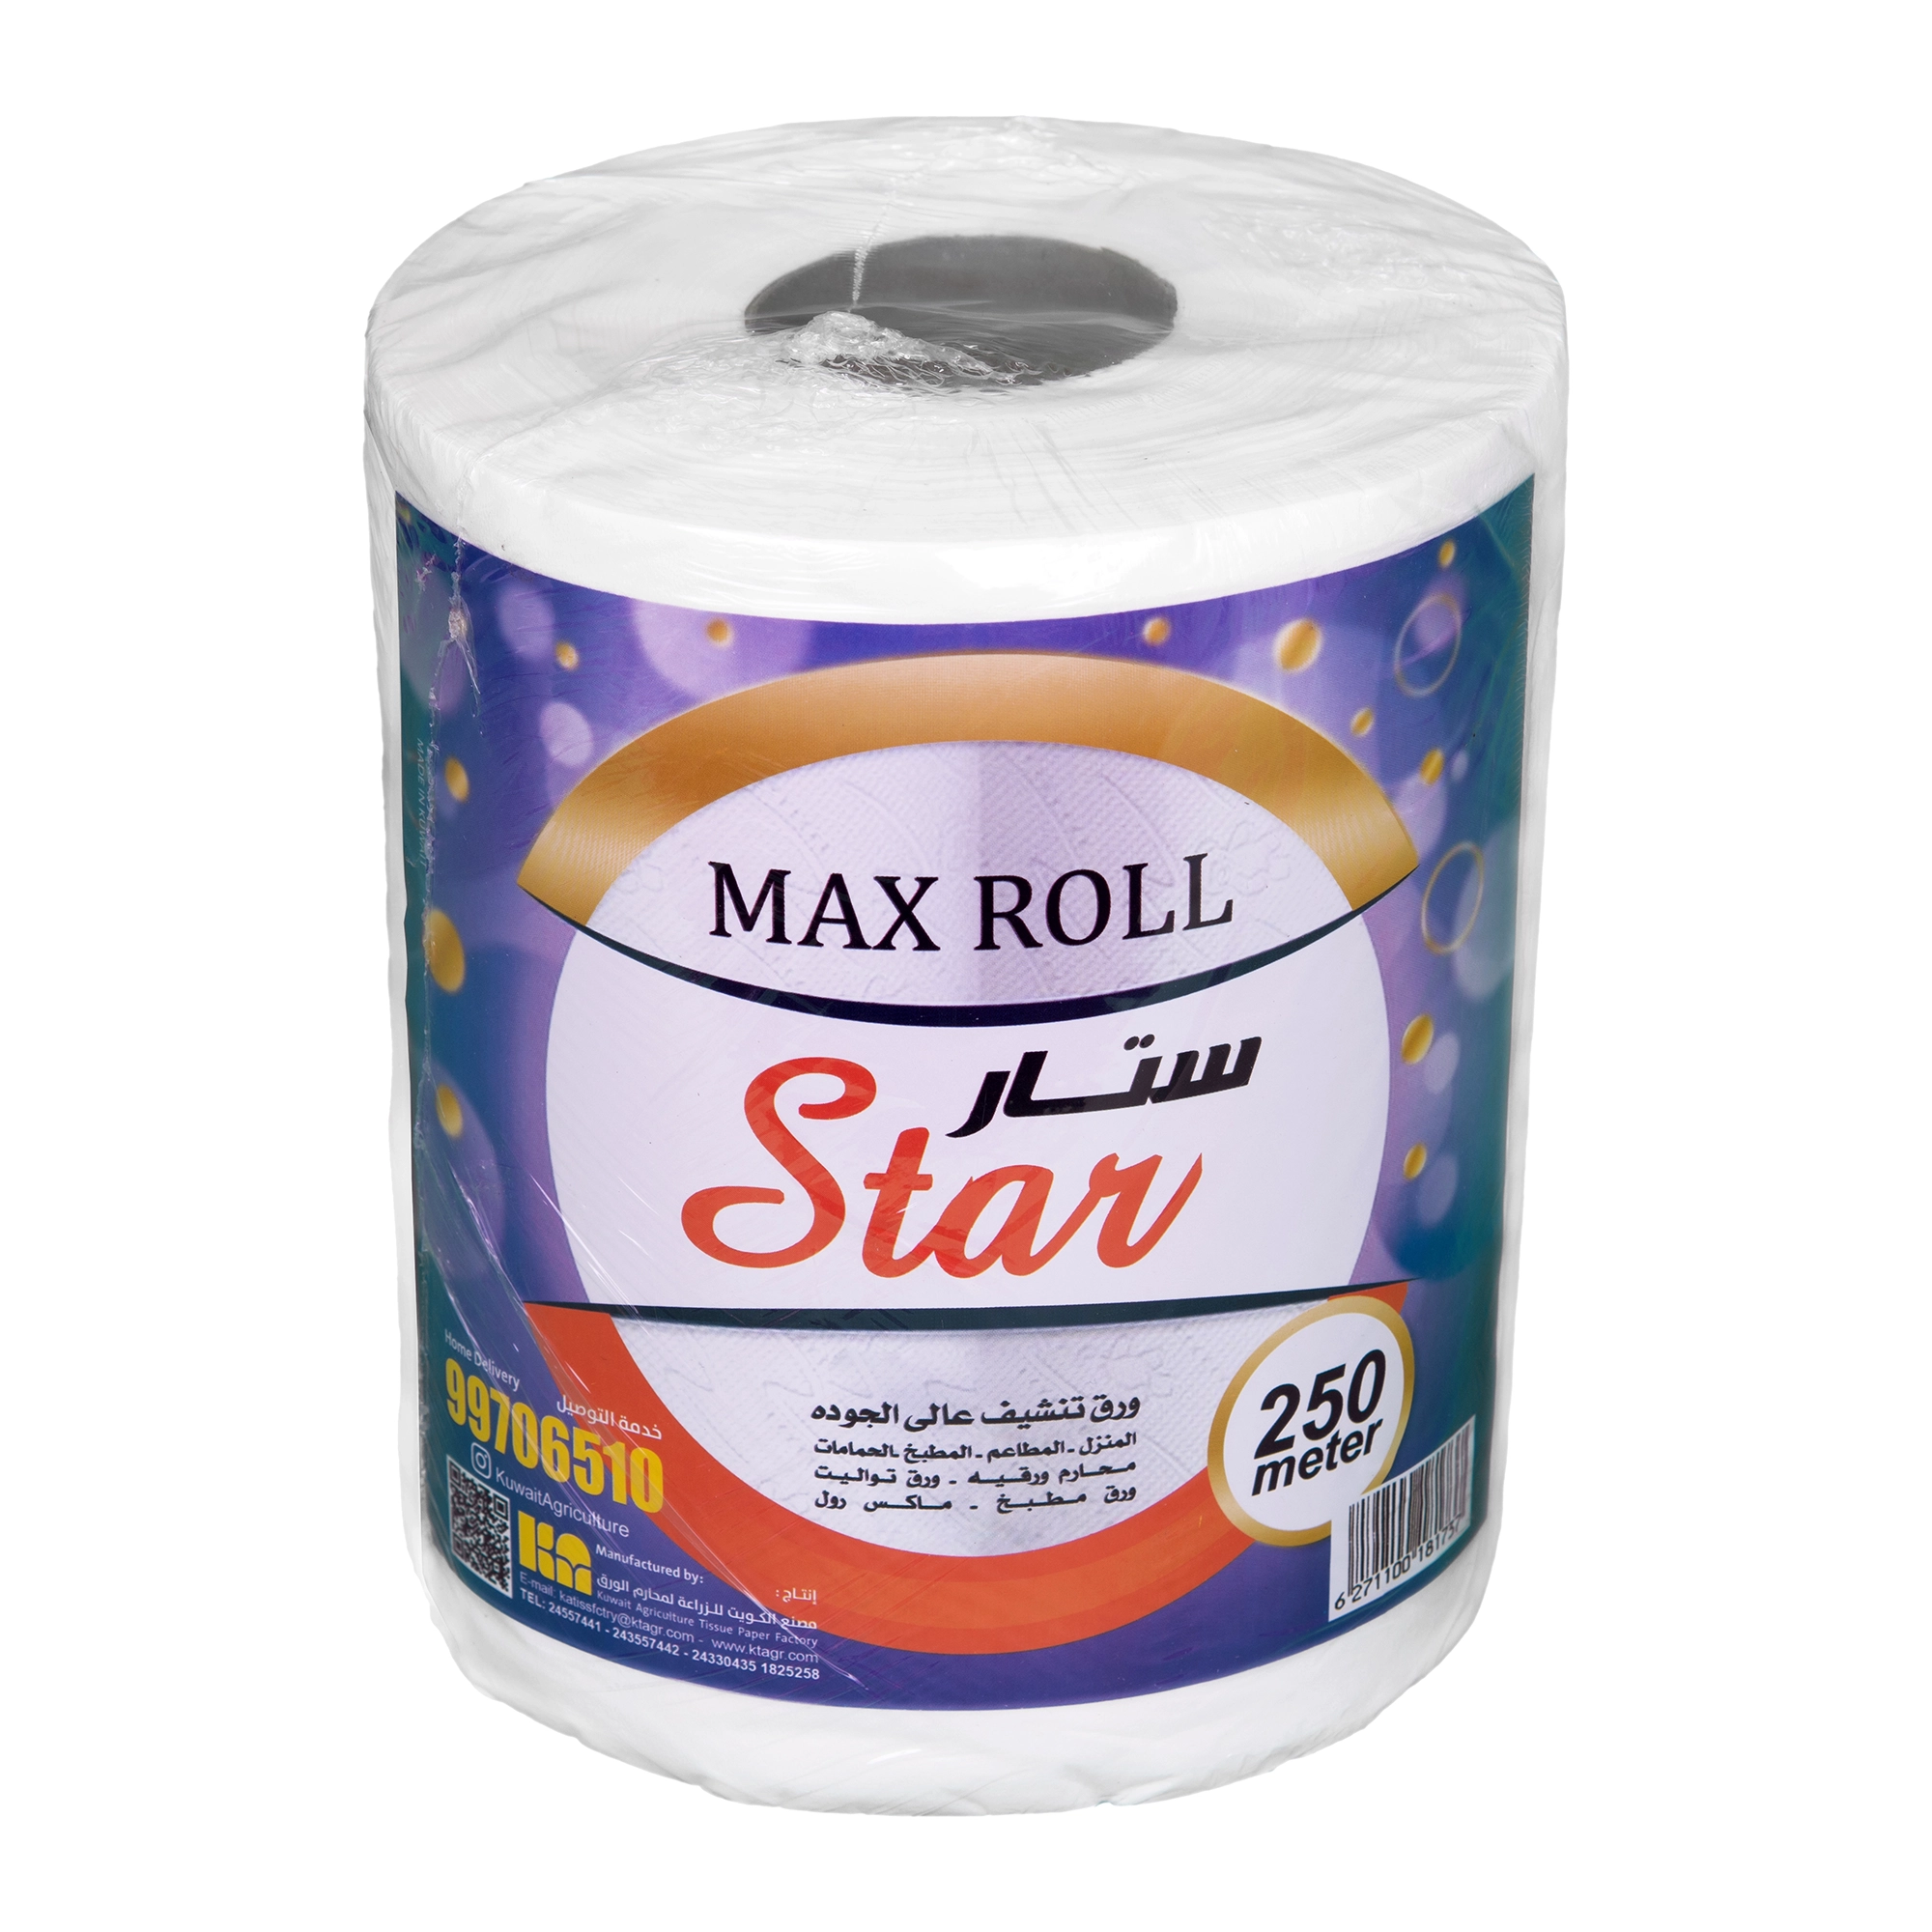 KAC - Star Maxi Roll 250 mtr